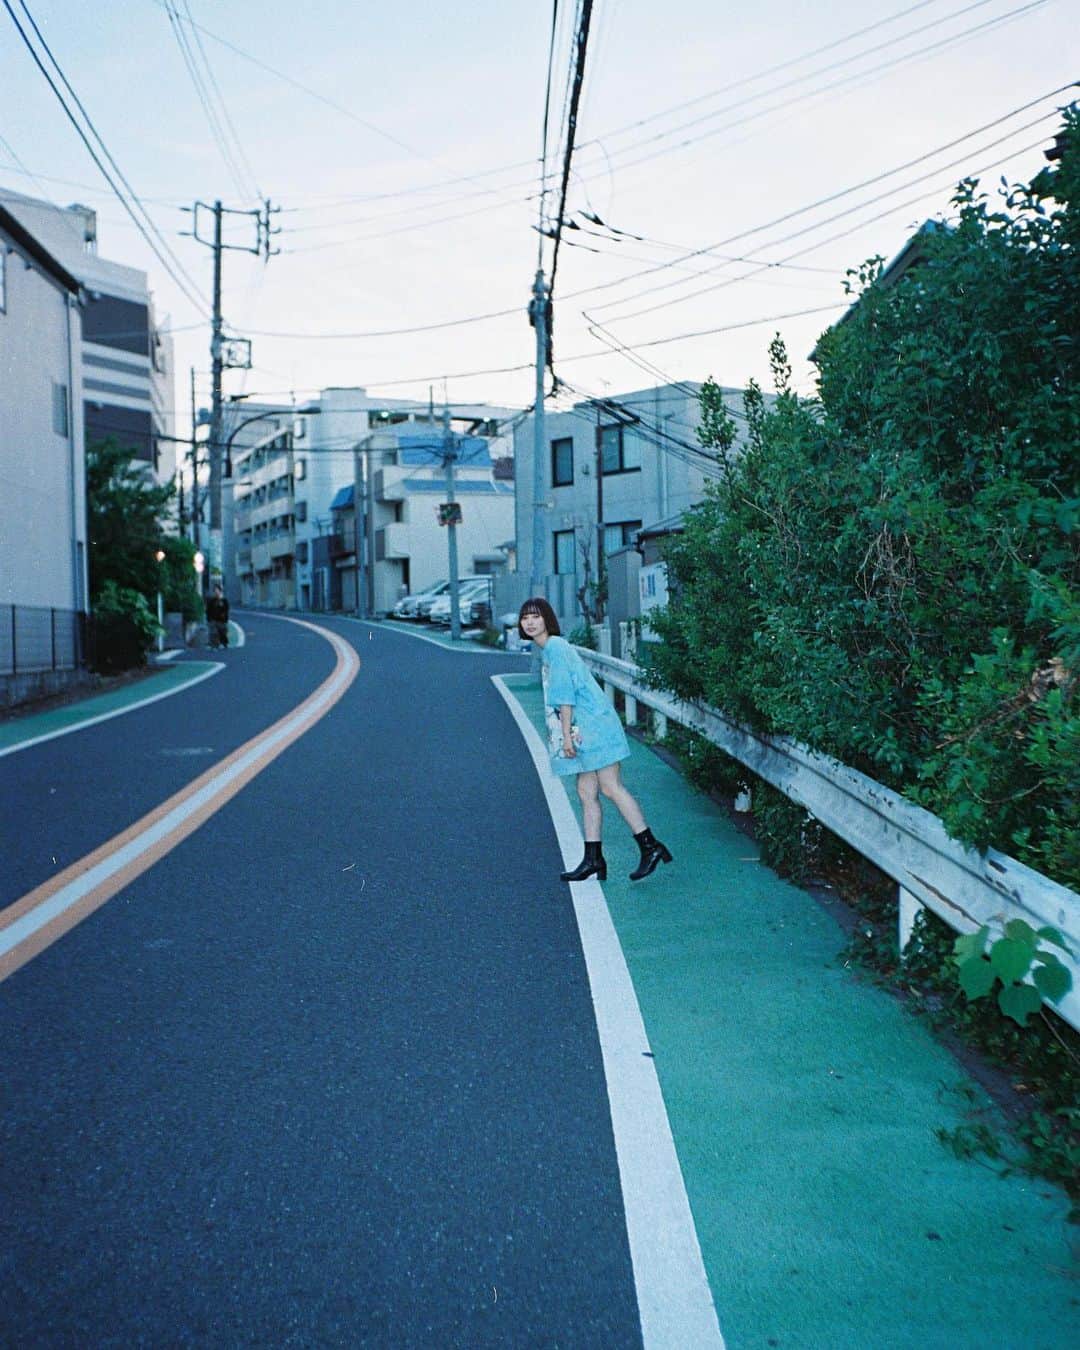 Yuma Takatsukiのインスタグラム：「. . . film . . . . . . 北海道来て毎日写真を撮ってます。 いろいろ勉強にもなるしありがたいな。 ⁡ 明日は5時から撮影なのでがんばります！ ⁡ それでは今日もお疲れさまでした！ . Tokyo／Japan . -----------------------------------------  ITTOKO写真展『ほな、いっとこ！』 vol.4 　　　　　　　　　　　　　　　〜FIND〜  会期 : 2023.06.28(水)〜07.03(月) 時間 : 12:00〜20:00 　　　(初日は14:00~,最終日は18:00迄) 場所 : イロリムラ 2F 〒 530-0016 大阪府大阪市北区中崎1丁目4番15号  ----------------------------------------- . #フィルムカメラで残す日常  . ―――――――――――――――――――――――――― 関西を中心にフリーランスで活動しています。 Web広告、個人撮影、家族撮影、PR撮影など、 6月以降の撮影依頼募集中です。 ⁡ ⁡Yuma Takatsukiオリジナルプリセットも販売中です。 ⁡プロフィールのポートフォリオサイトからご覧下さい。  またフォトサークルITTOKOという活動をしています。 ⁡ハイライトに色んなイベントをまとめています。 ――――――――――――――――――――――――――」